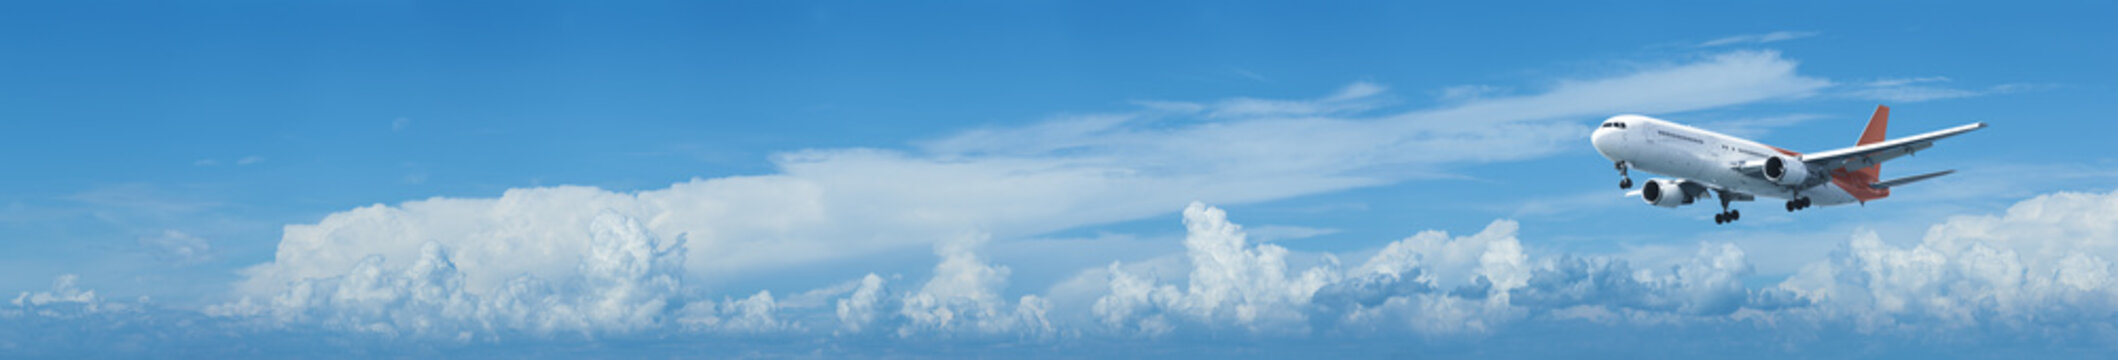 Fototapeta Jet plane in a blue cloudy sky